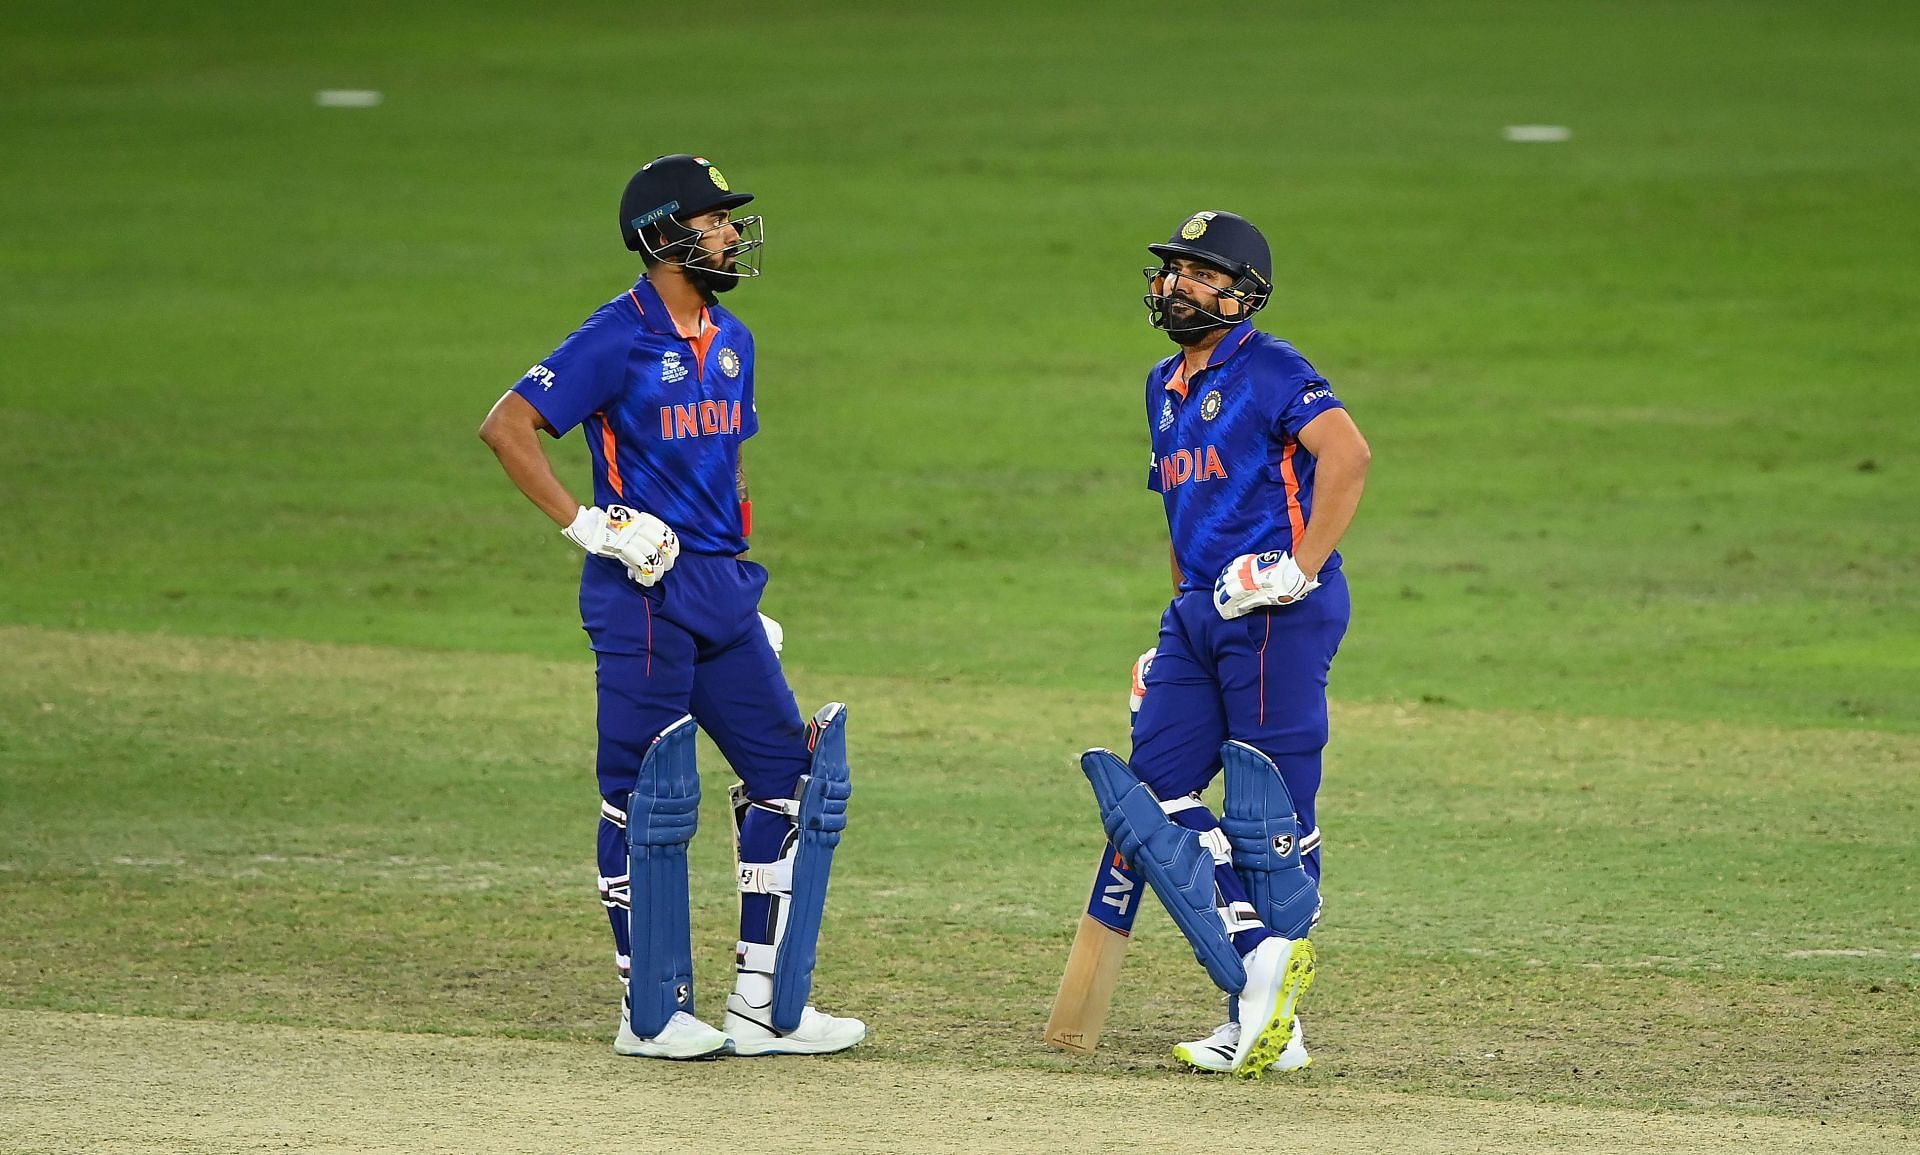 भारत ने नामीबिया को हराकर लगातार तीसरी जीत दर्ज की, लेकिन सेमीफाइनल में प्रवेश नहीं कर सके 